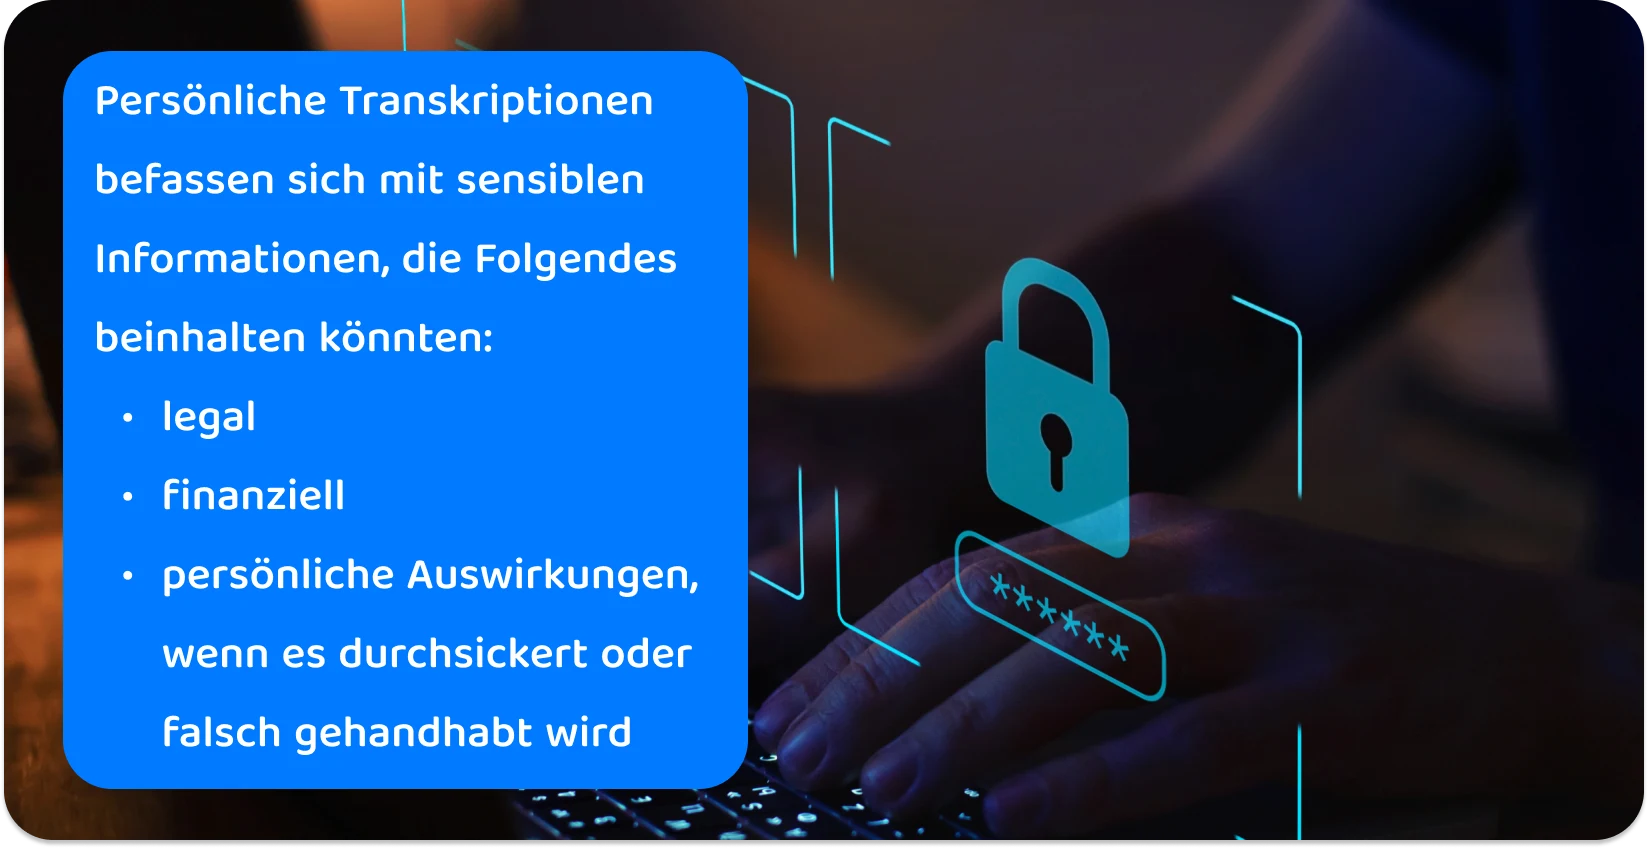 Hände, die auf einer Tastatur tippen, mit einem digitalen Schlosssymbol, das sichere persönliche Transkriptionspraktiken für vertrauliche Informationen veranschaulicht.